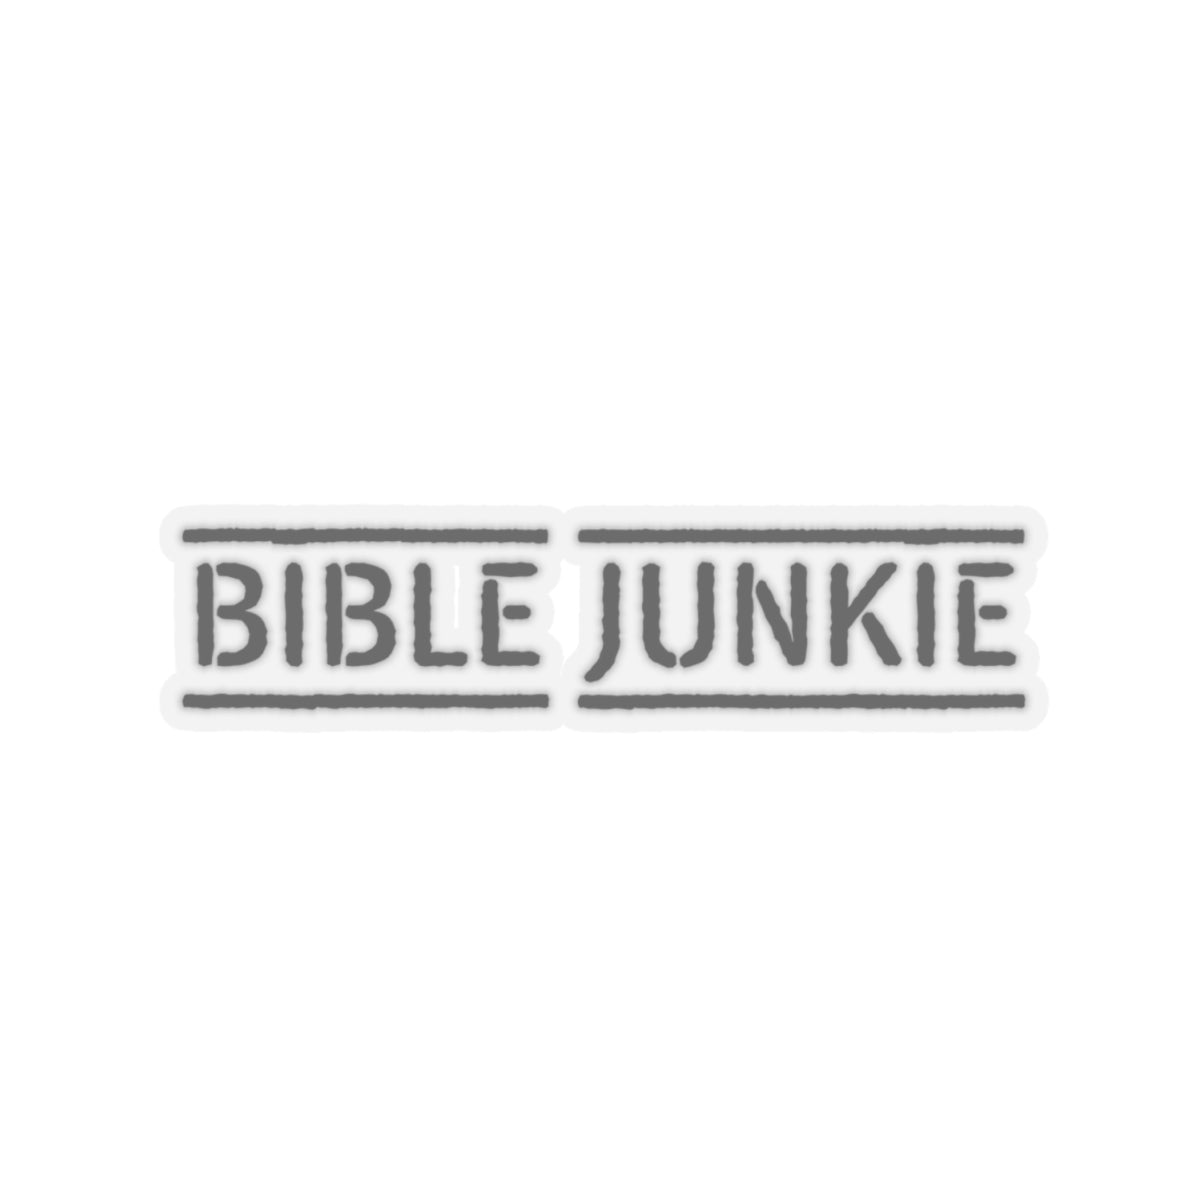 BIBLE JUNKIE STICKER. Wear it. Share it. Gods Word. Bible Junkies.